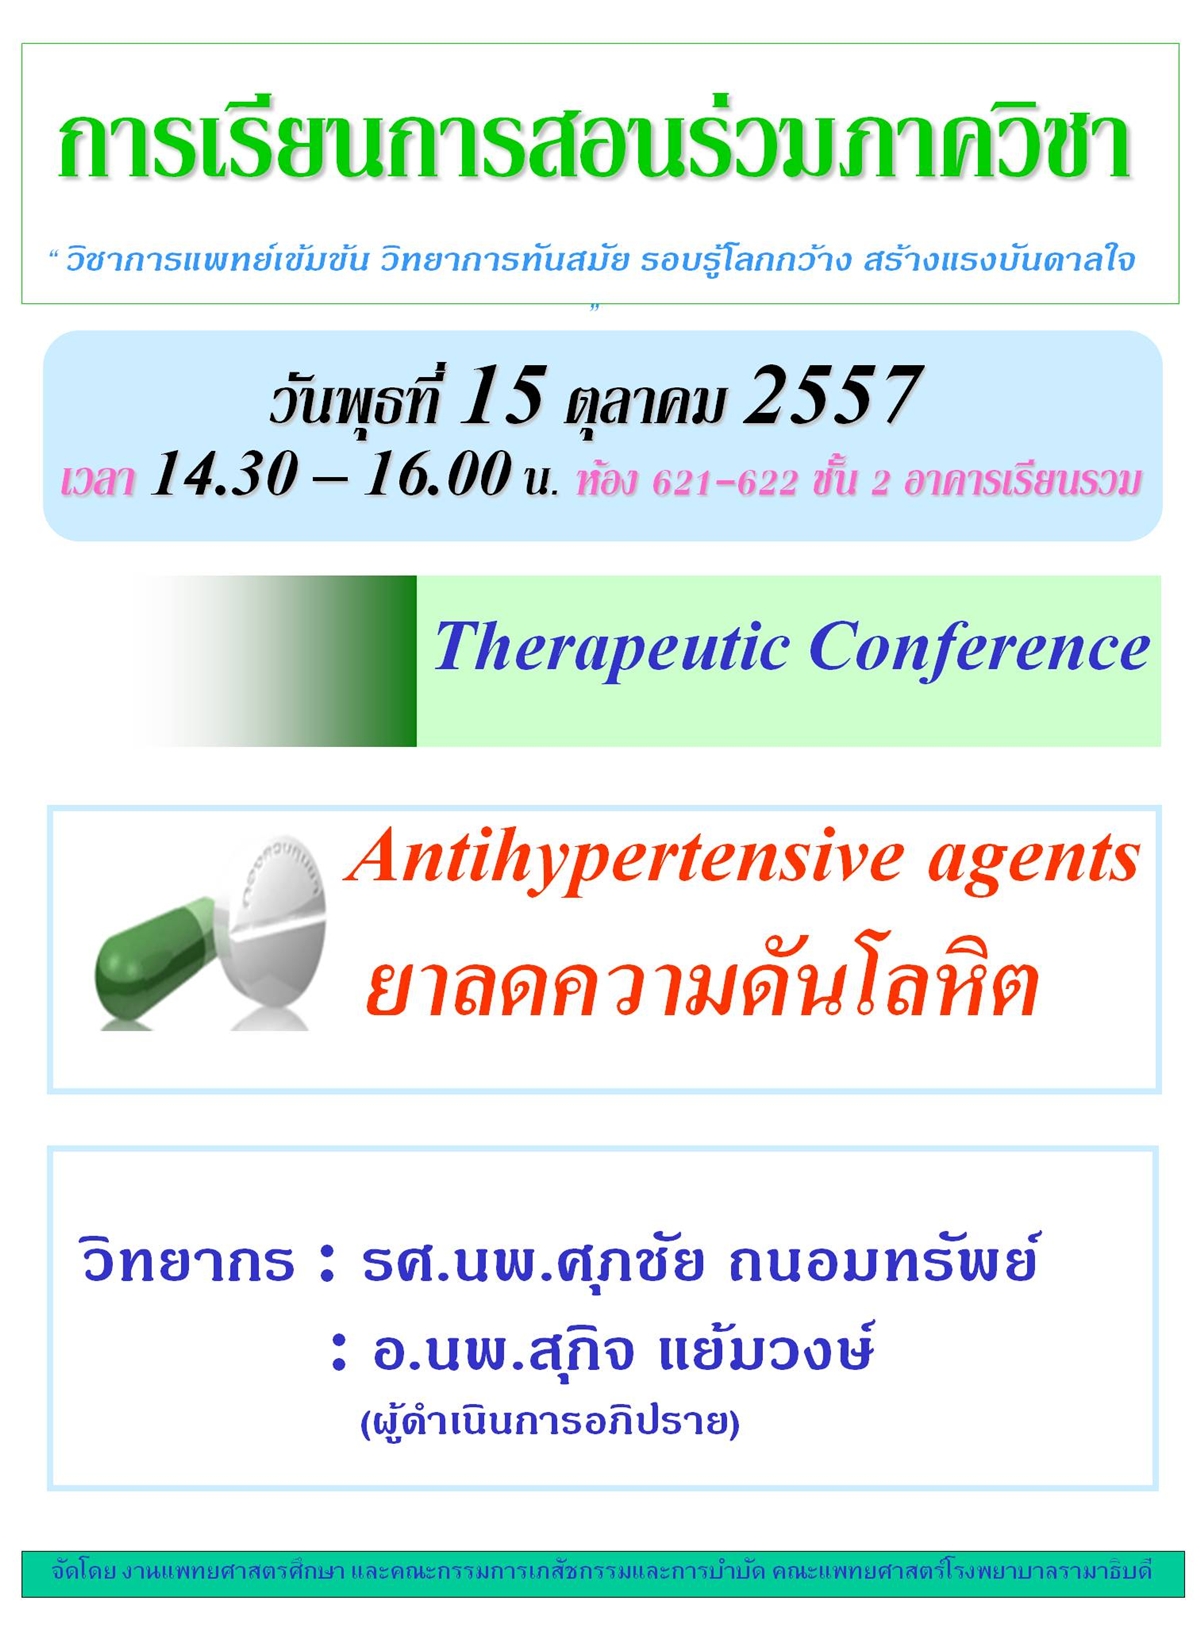 Therapeutic Conference "Antihypertensive agents ยาลดความดันโลหิต"